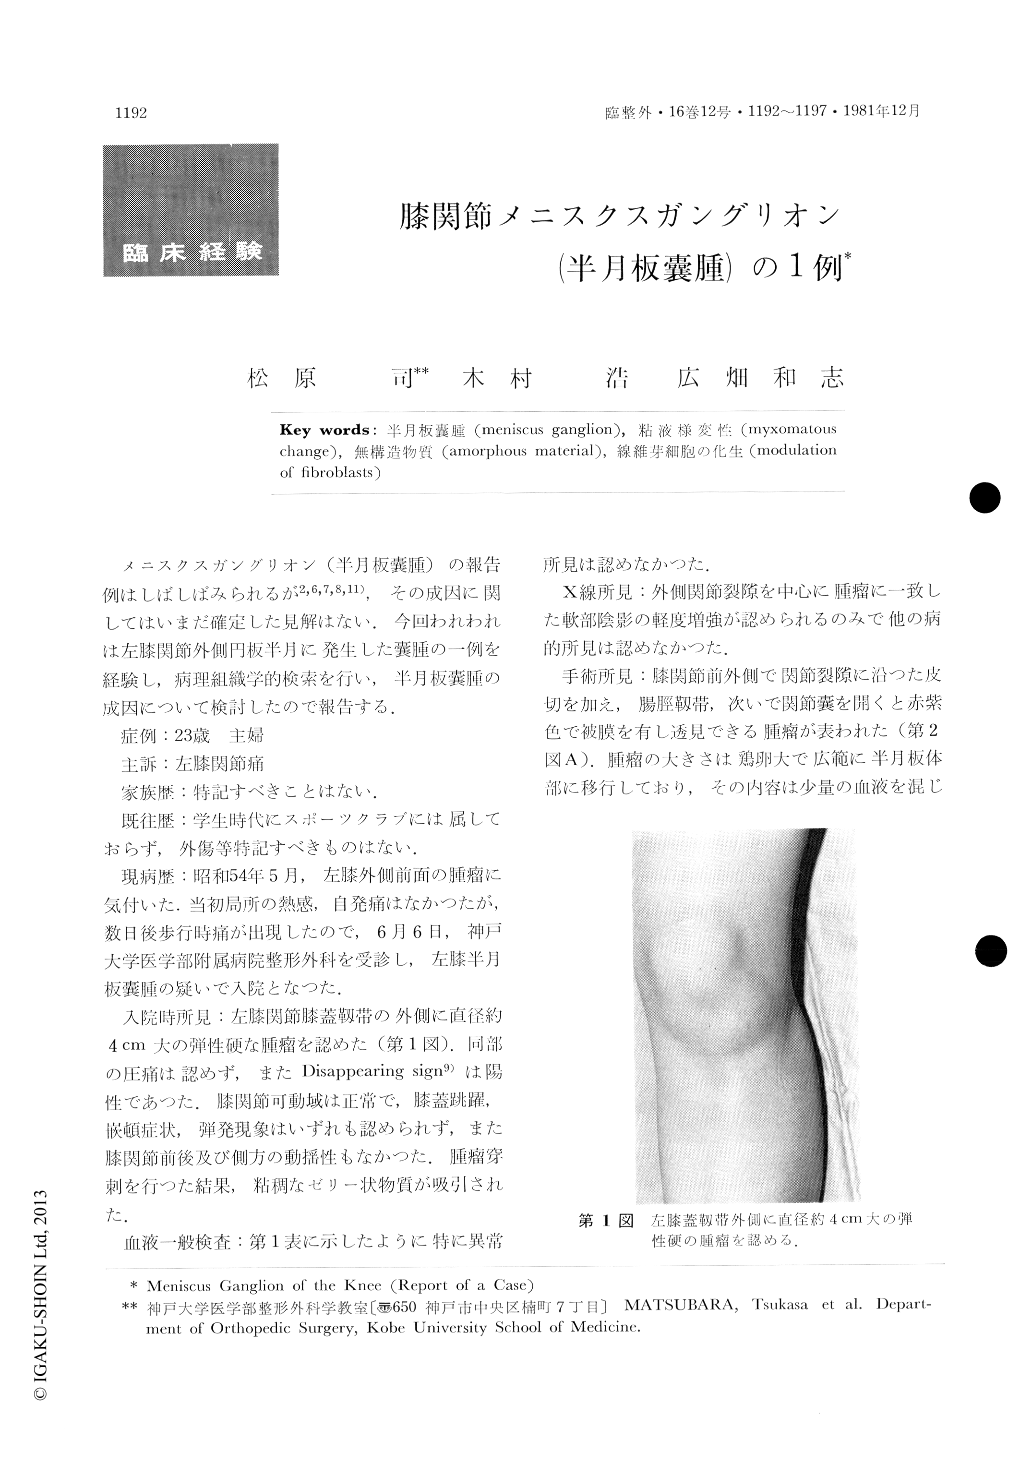 膝関節メニスクスガングリオン 半月板嚢腫 の1例 臨床整形外科 16巻12号 医書 Jp